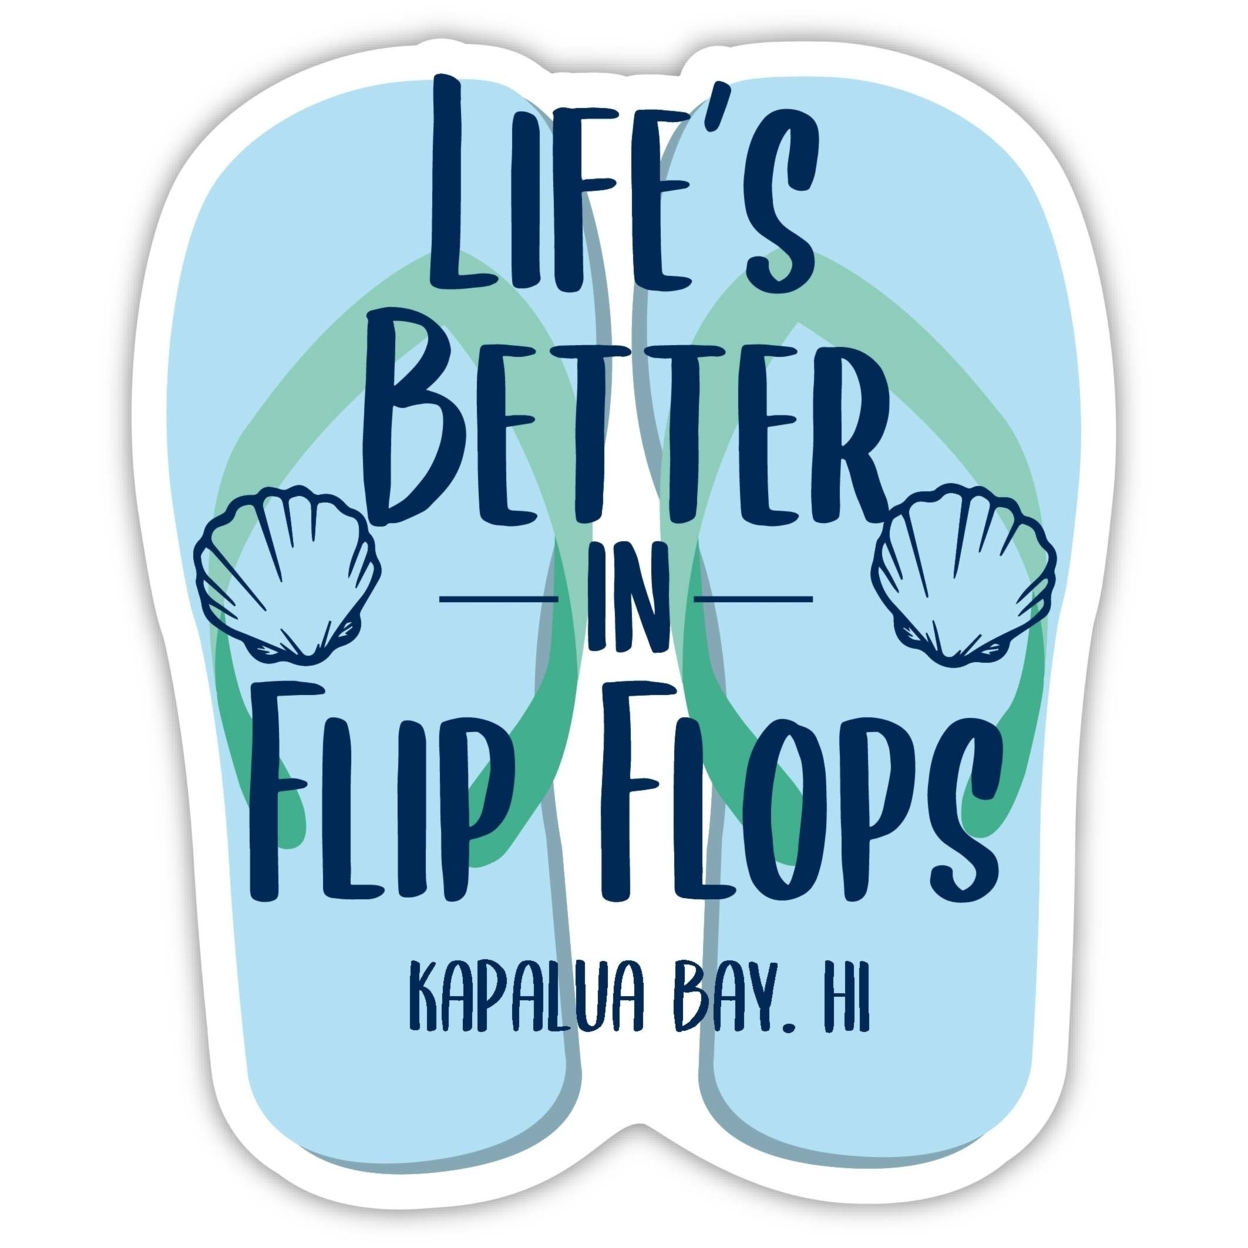 Kapalua Bay Hawaii Souvenir 4 Inch Vinyl Decal Sticker Flip Flop Design